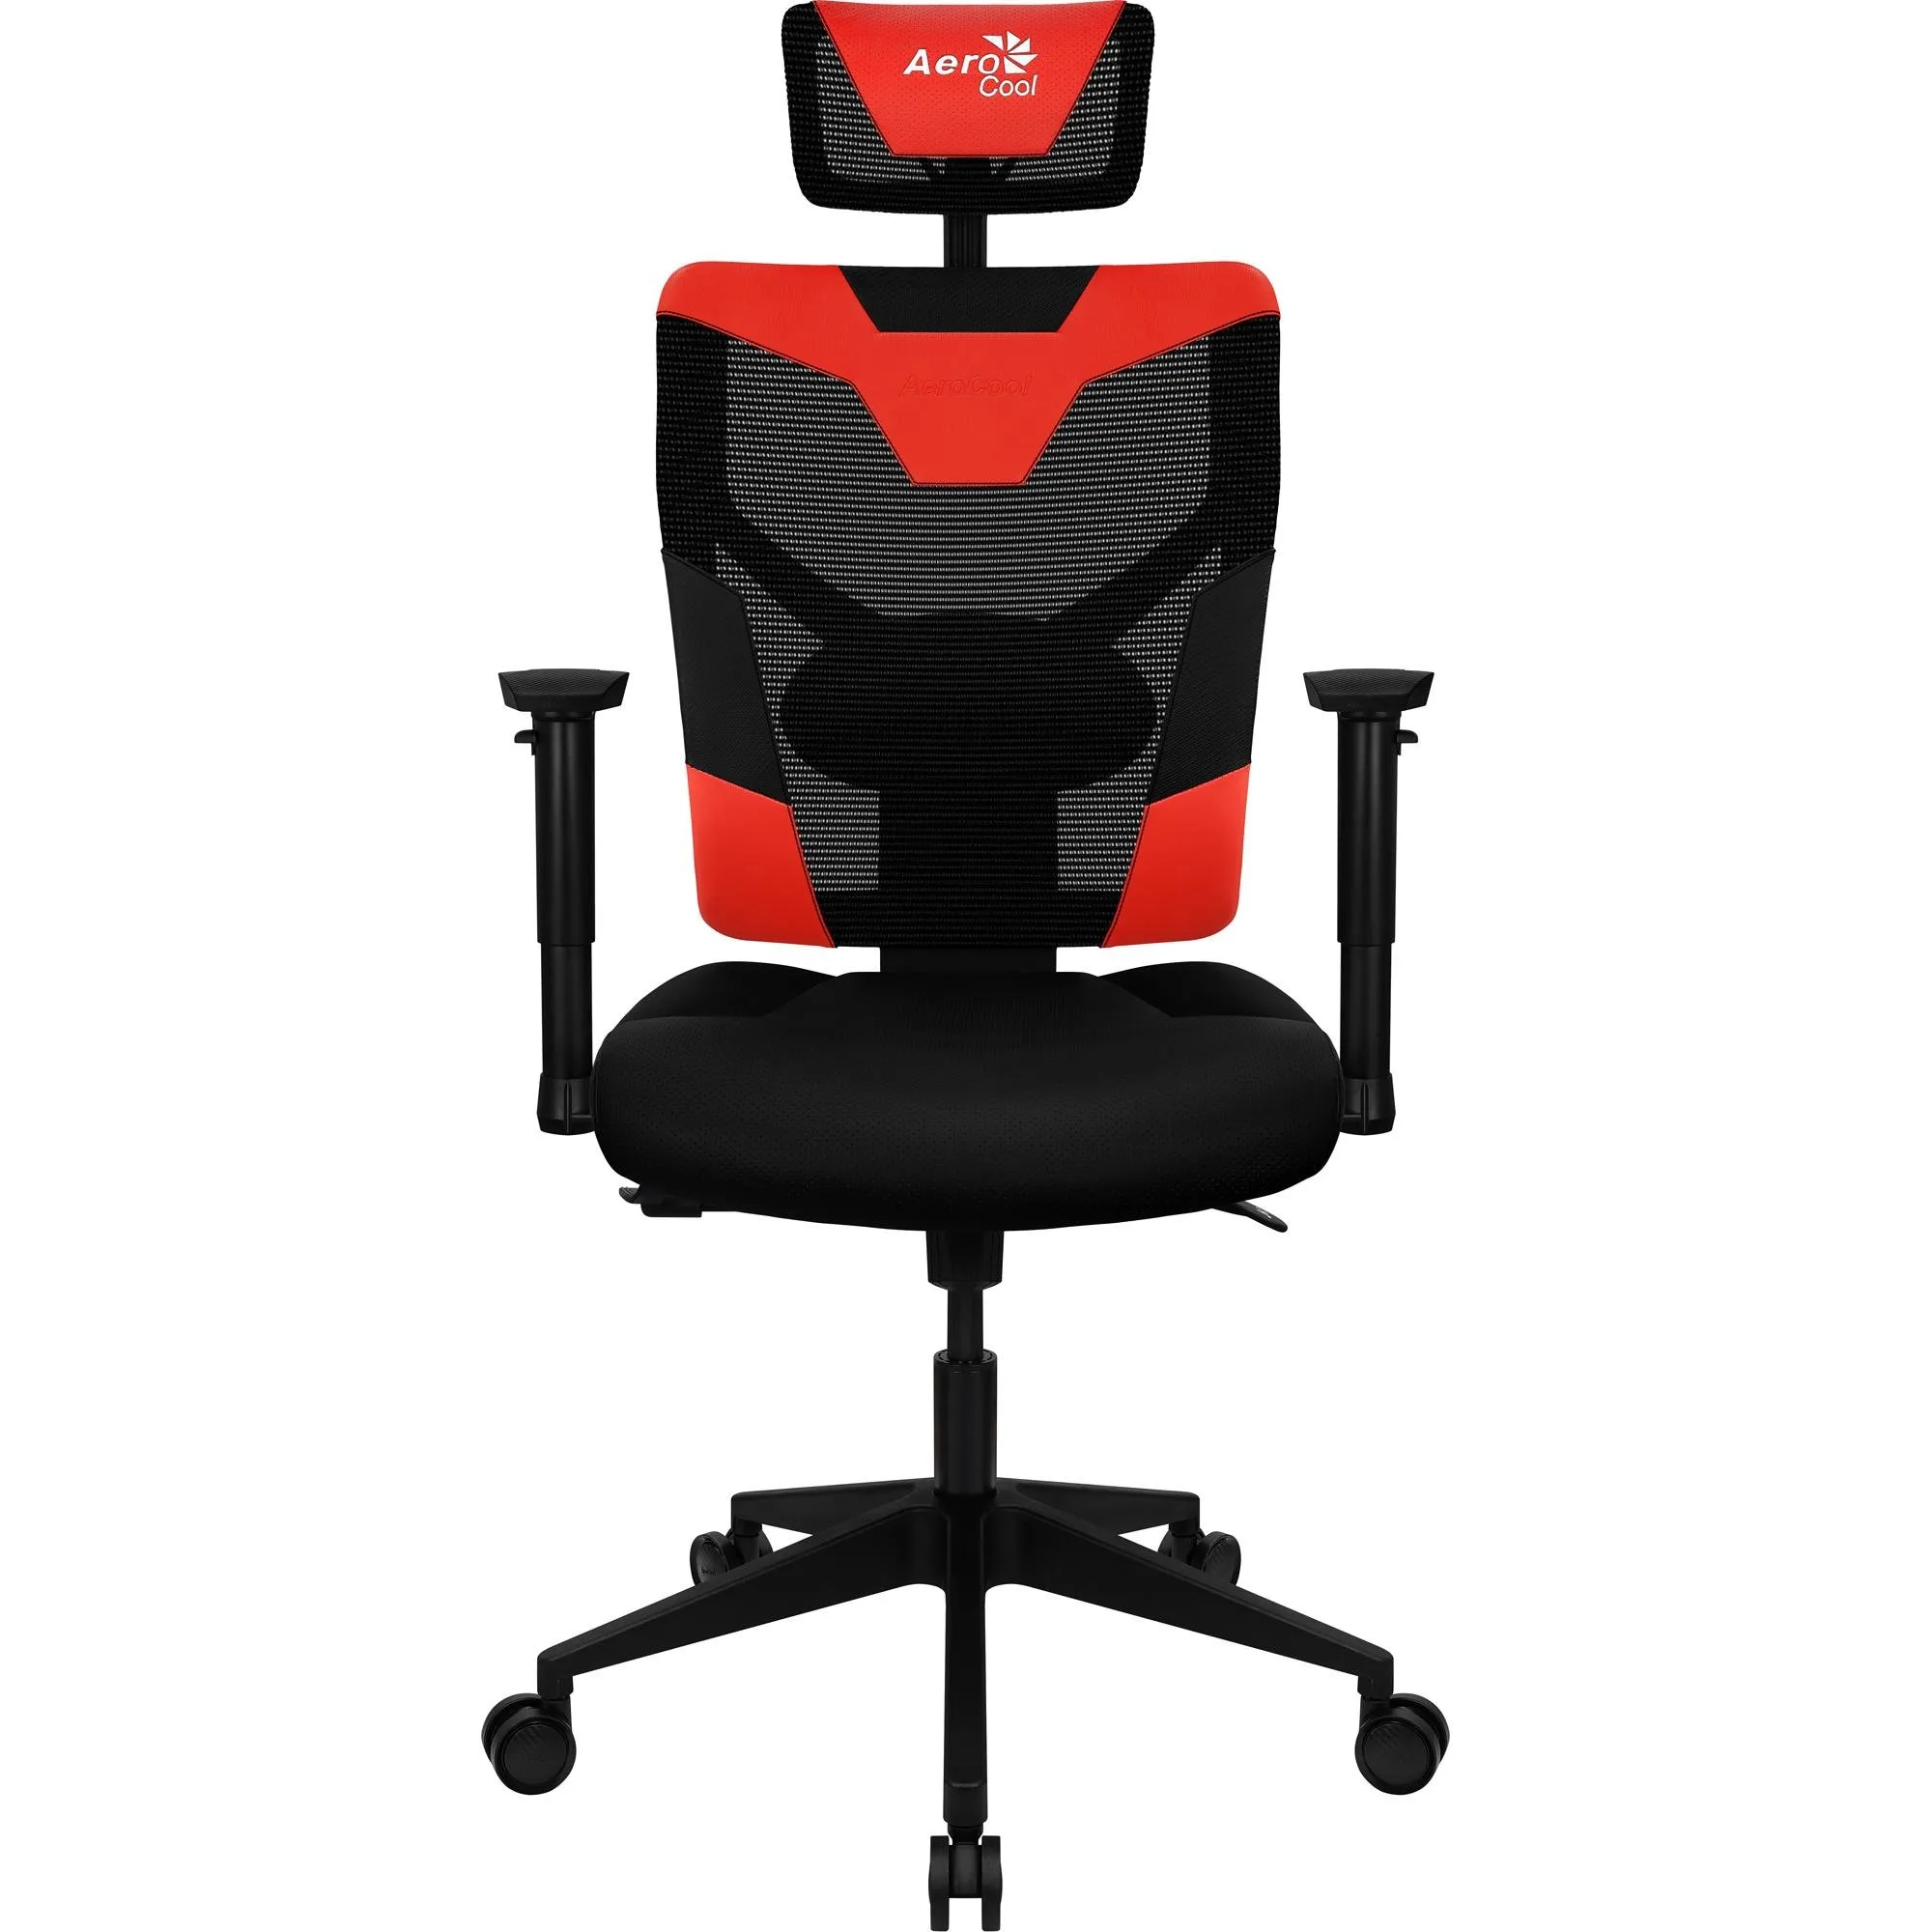 Cadeira Ergonômica Aerocool Guardian Champion Red Vermelha por 1.462,99 à vista no boleto/pix ou parcele em até 12x sem juros. Compre na loja Mundomax!